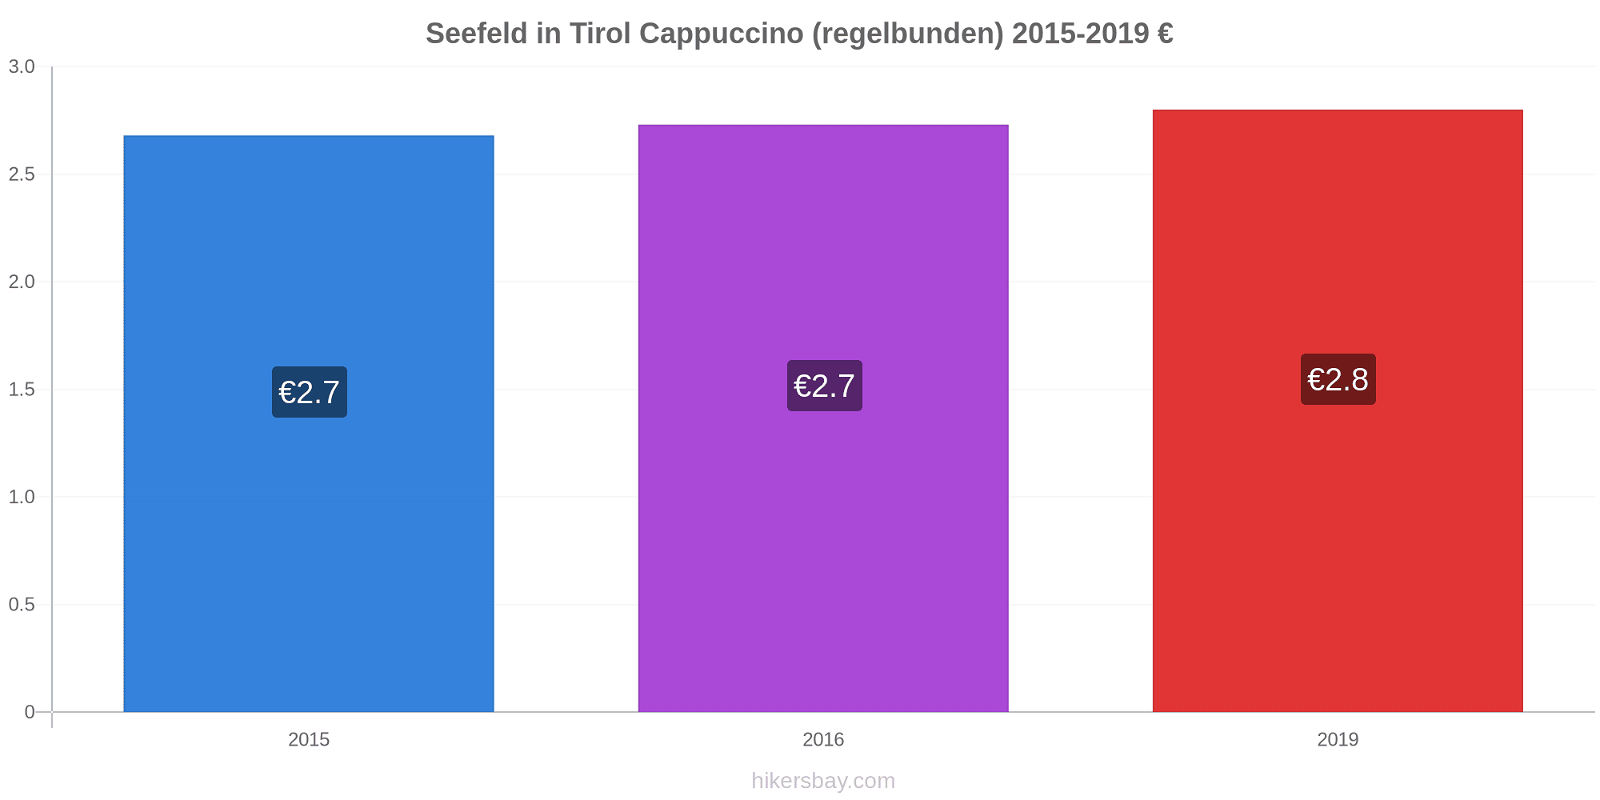 Seefeld in Tirol prisförändringar Cappuccino (regelbunden) hikersbay.com